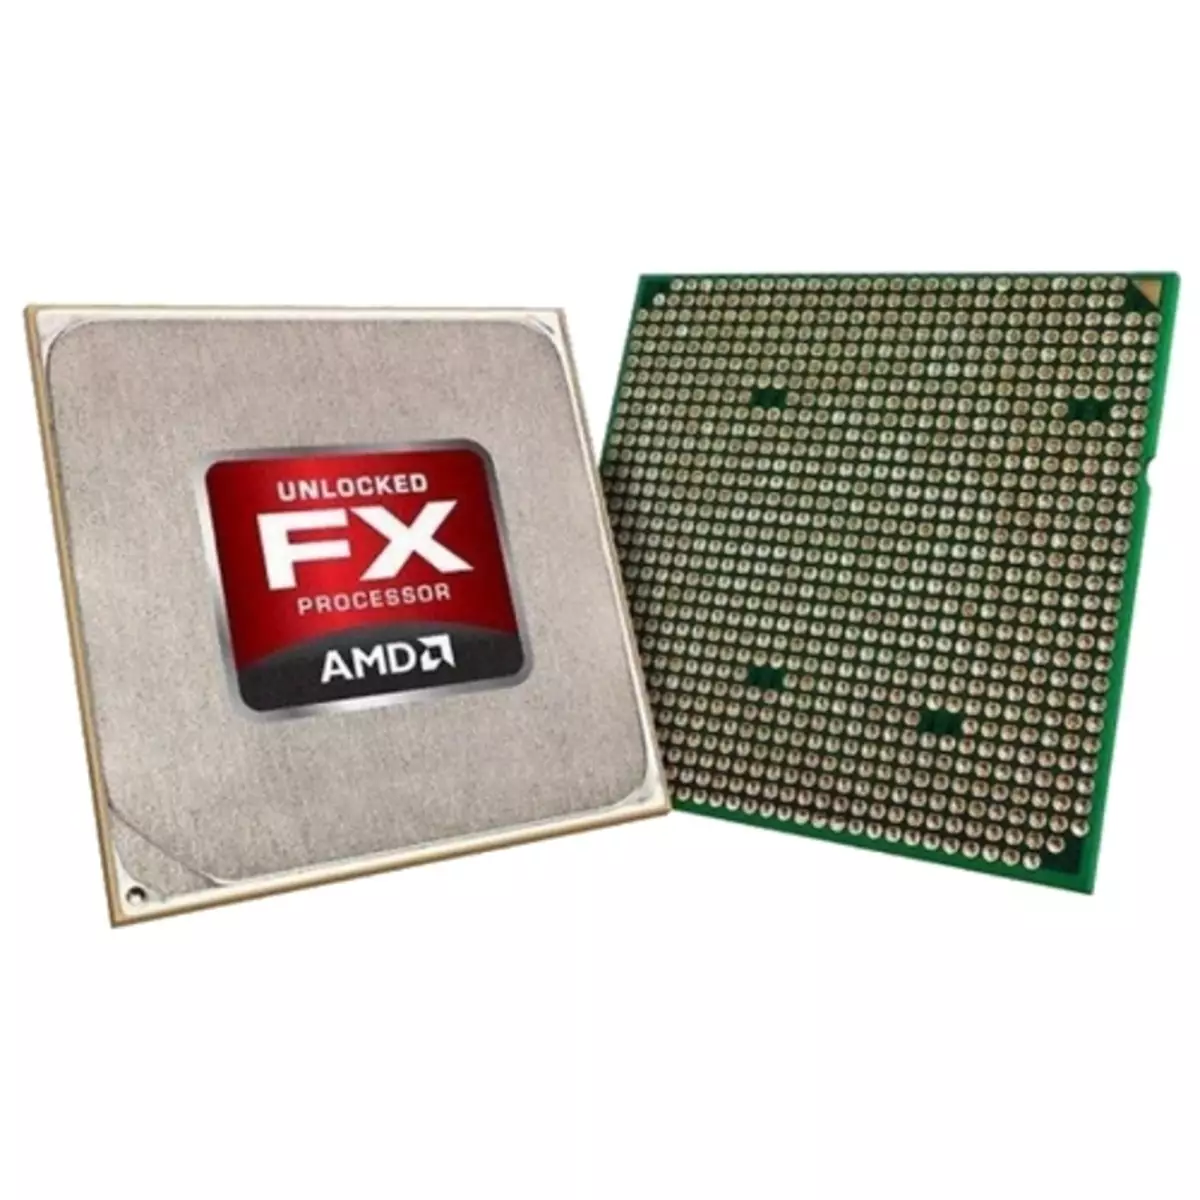 Buite AMD FX verwerker